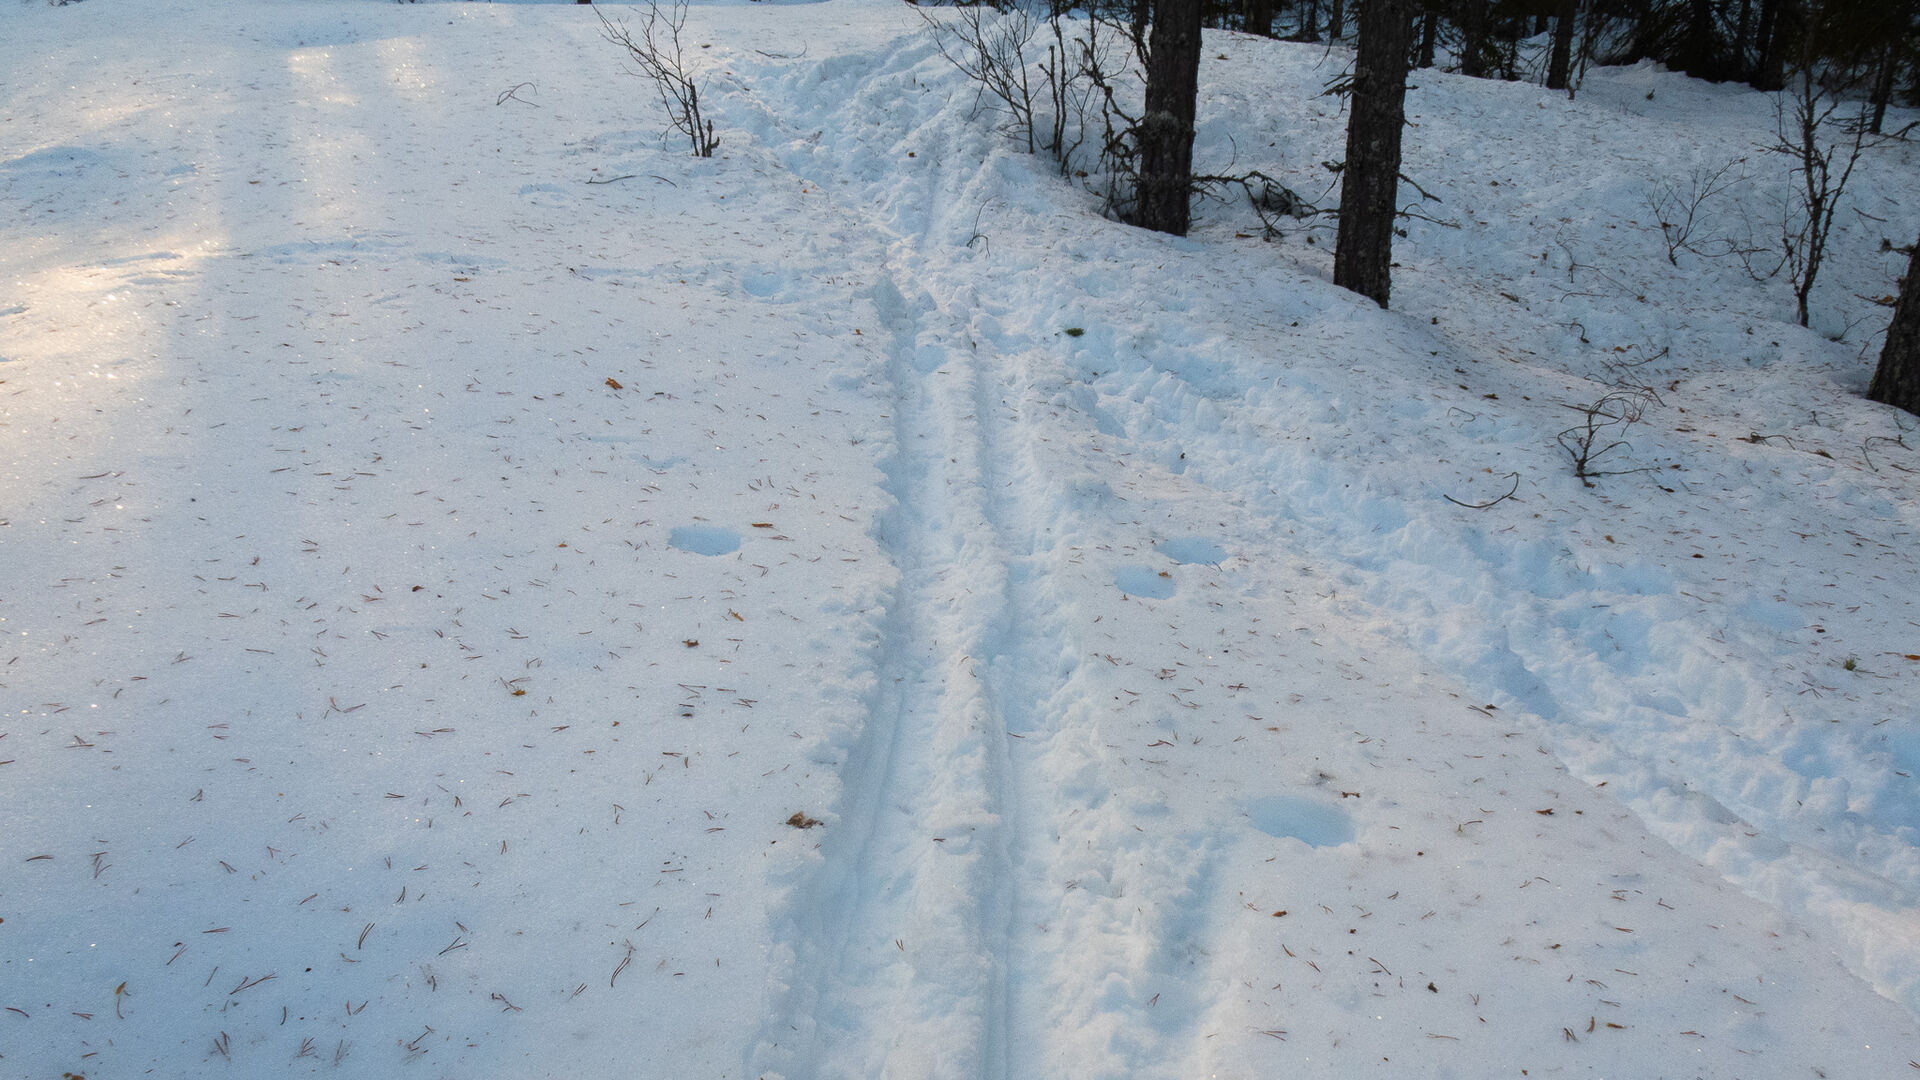 Ski tracks in the snow.